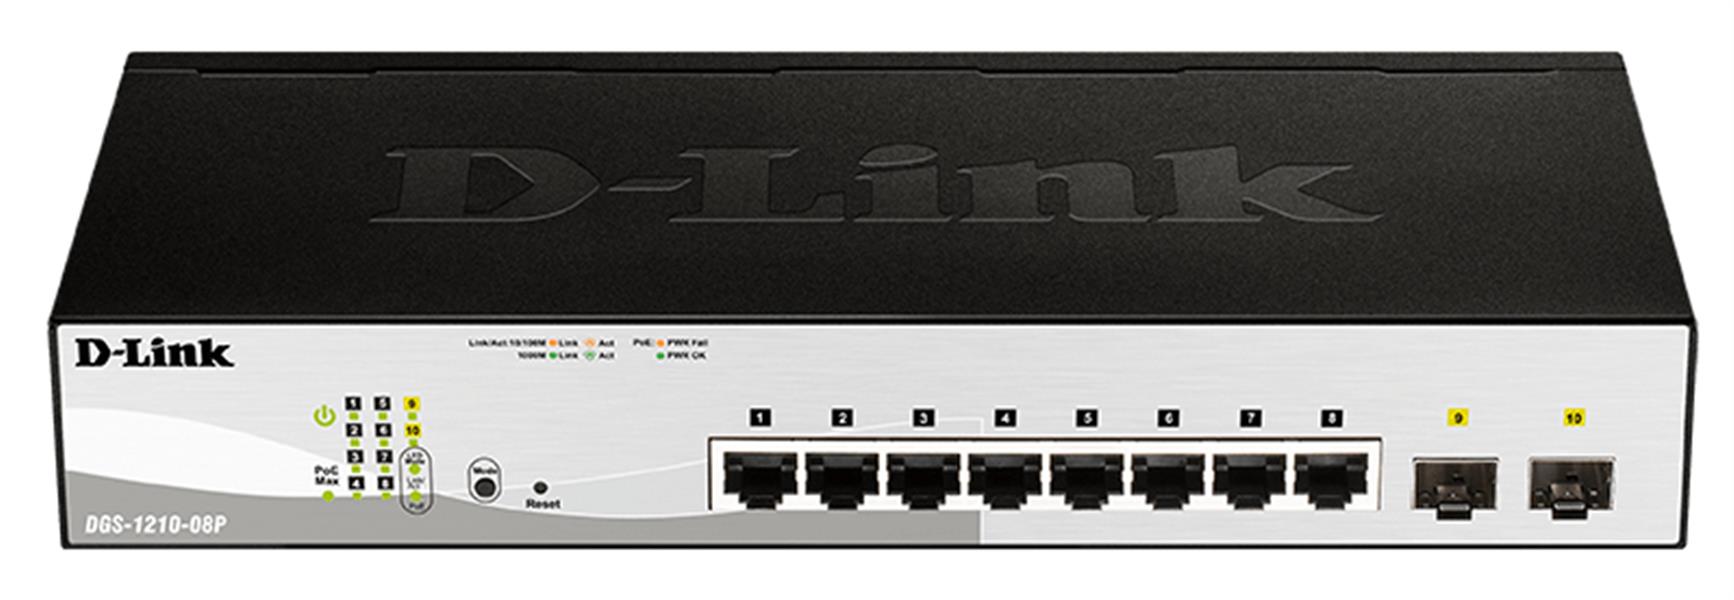 D-Link DGS-1210-08P Managed L2 Gigabit Ethernet (10/100/1000) Power over Ethernet (PoE) Zwart